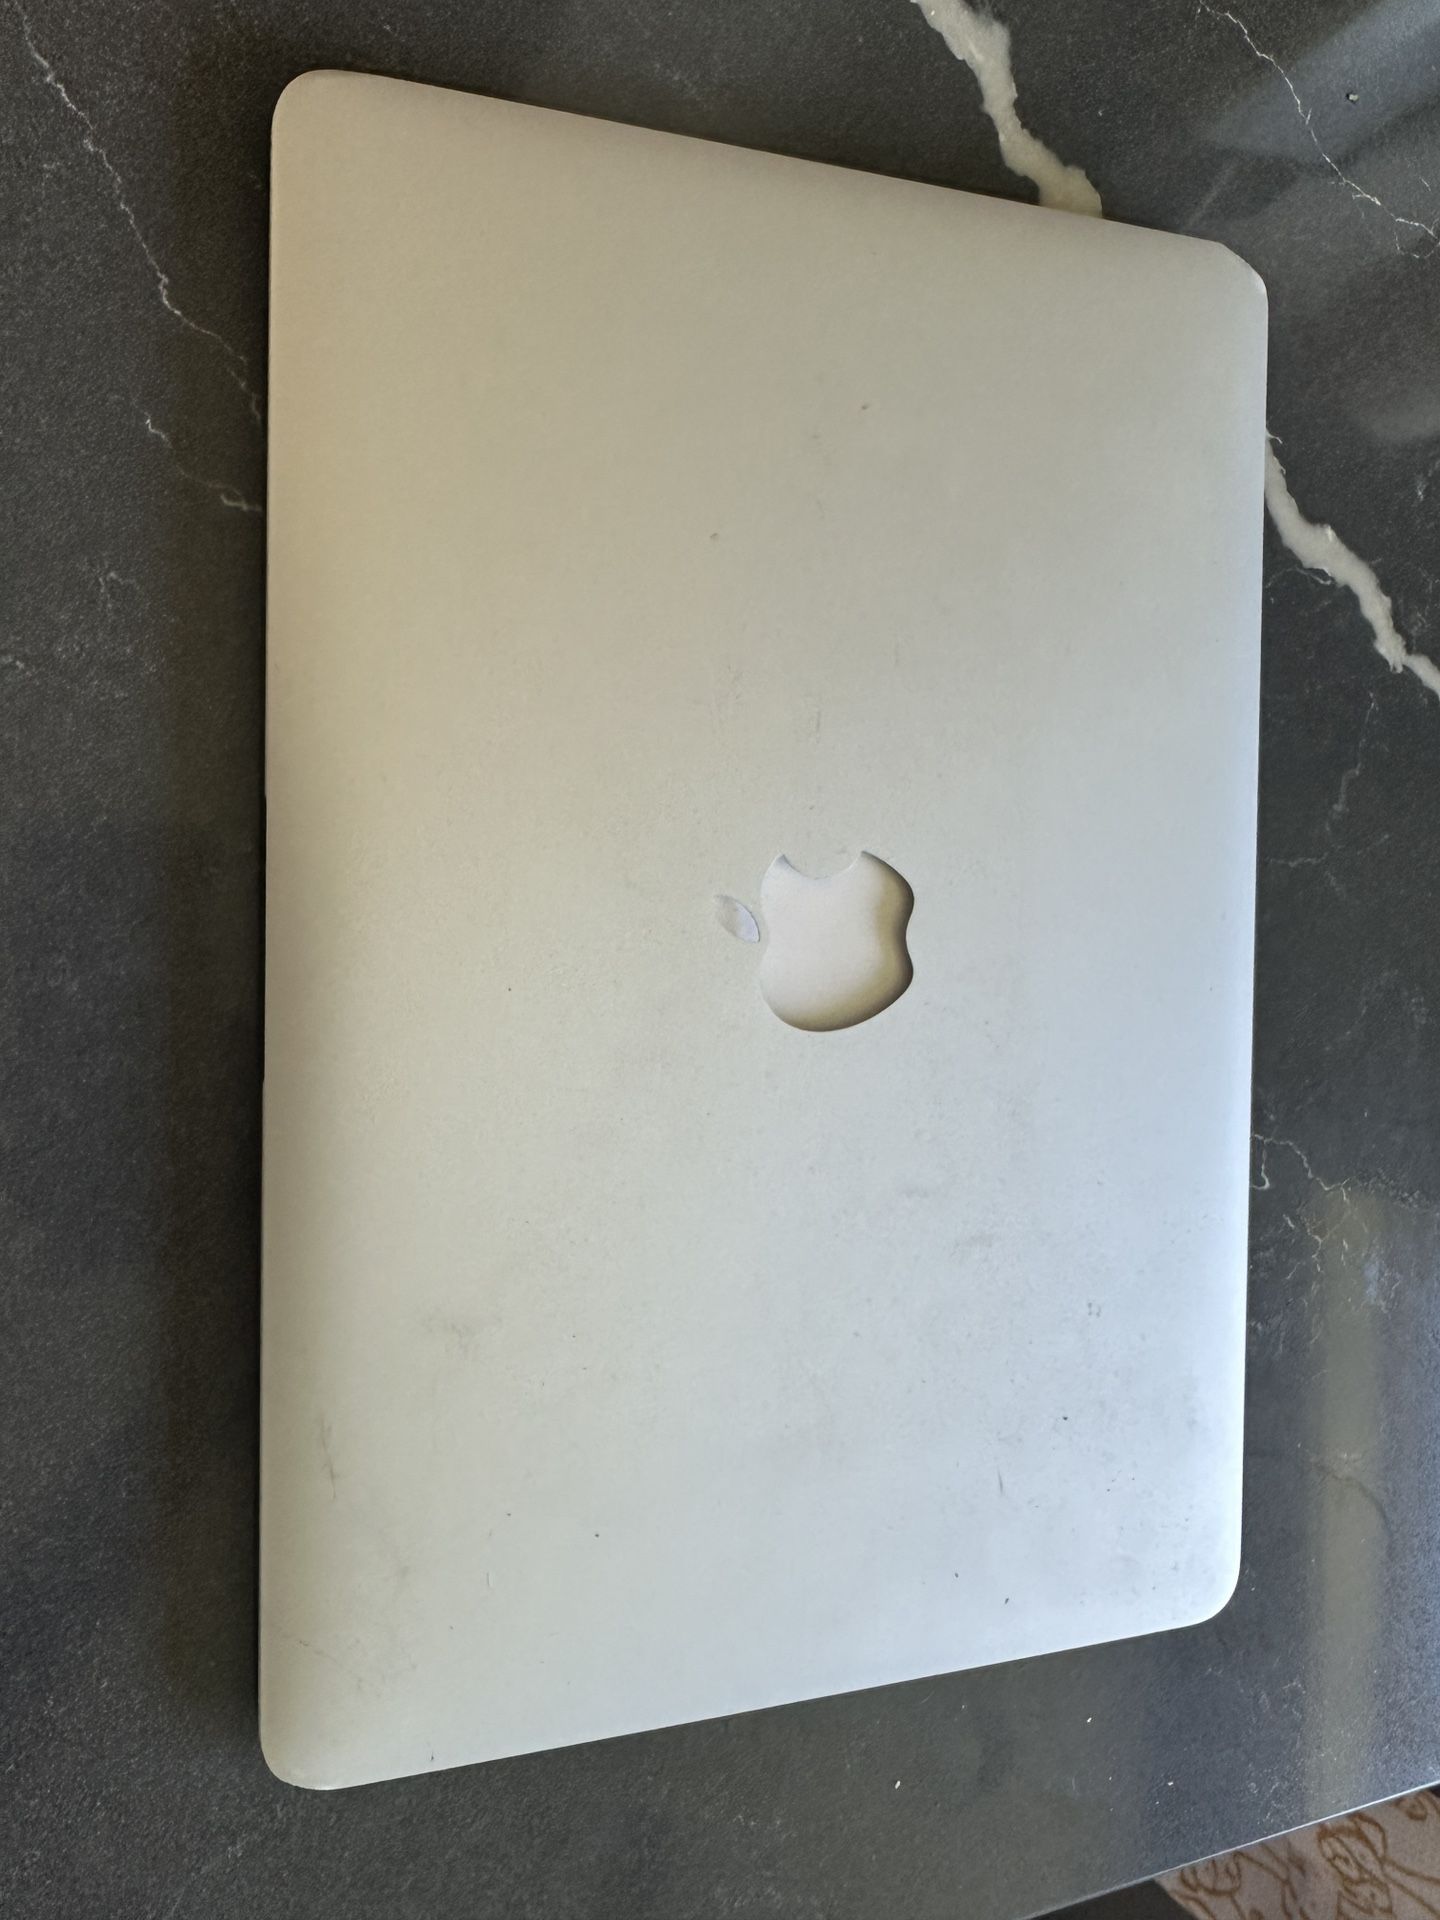 MacBook Air 8GB 1.6 GHz